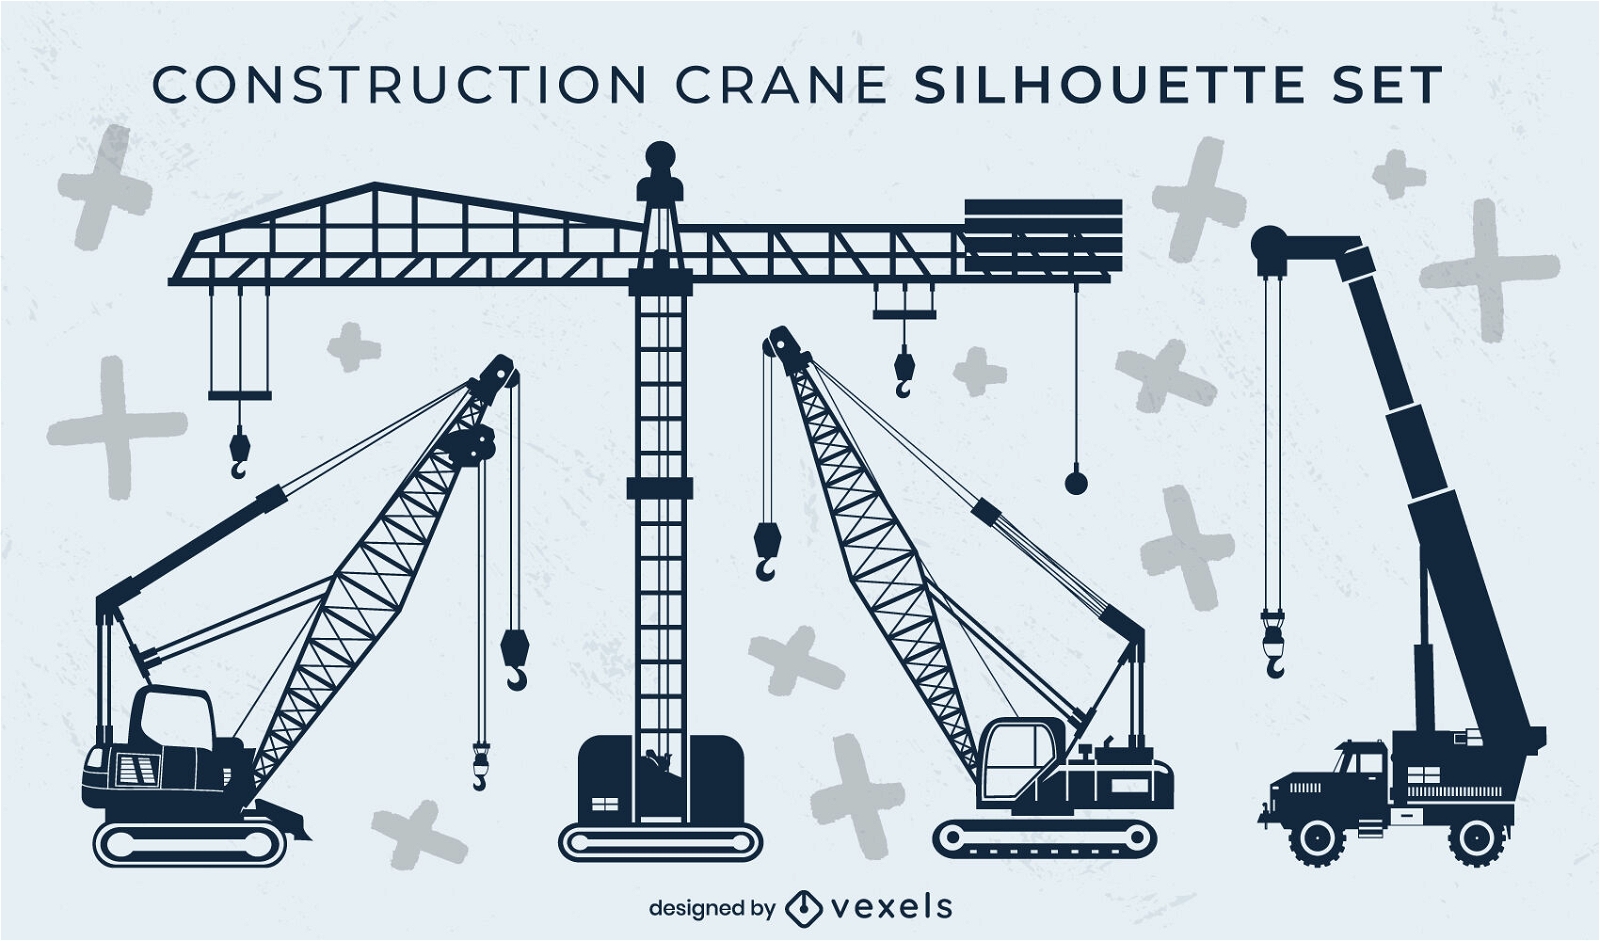 Construction cranes silhouette set